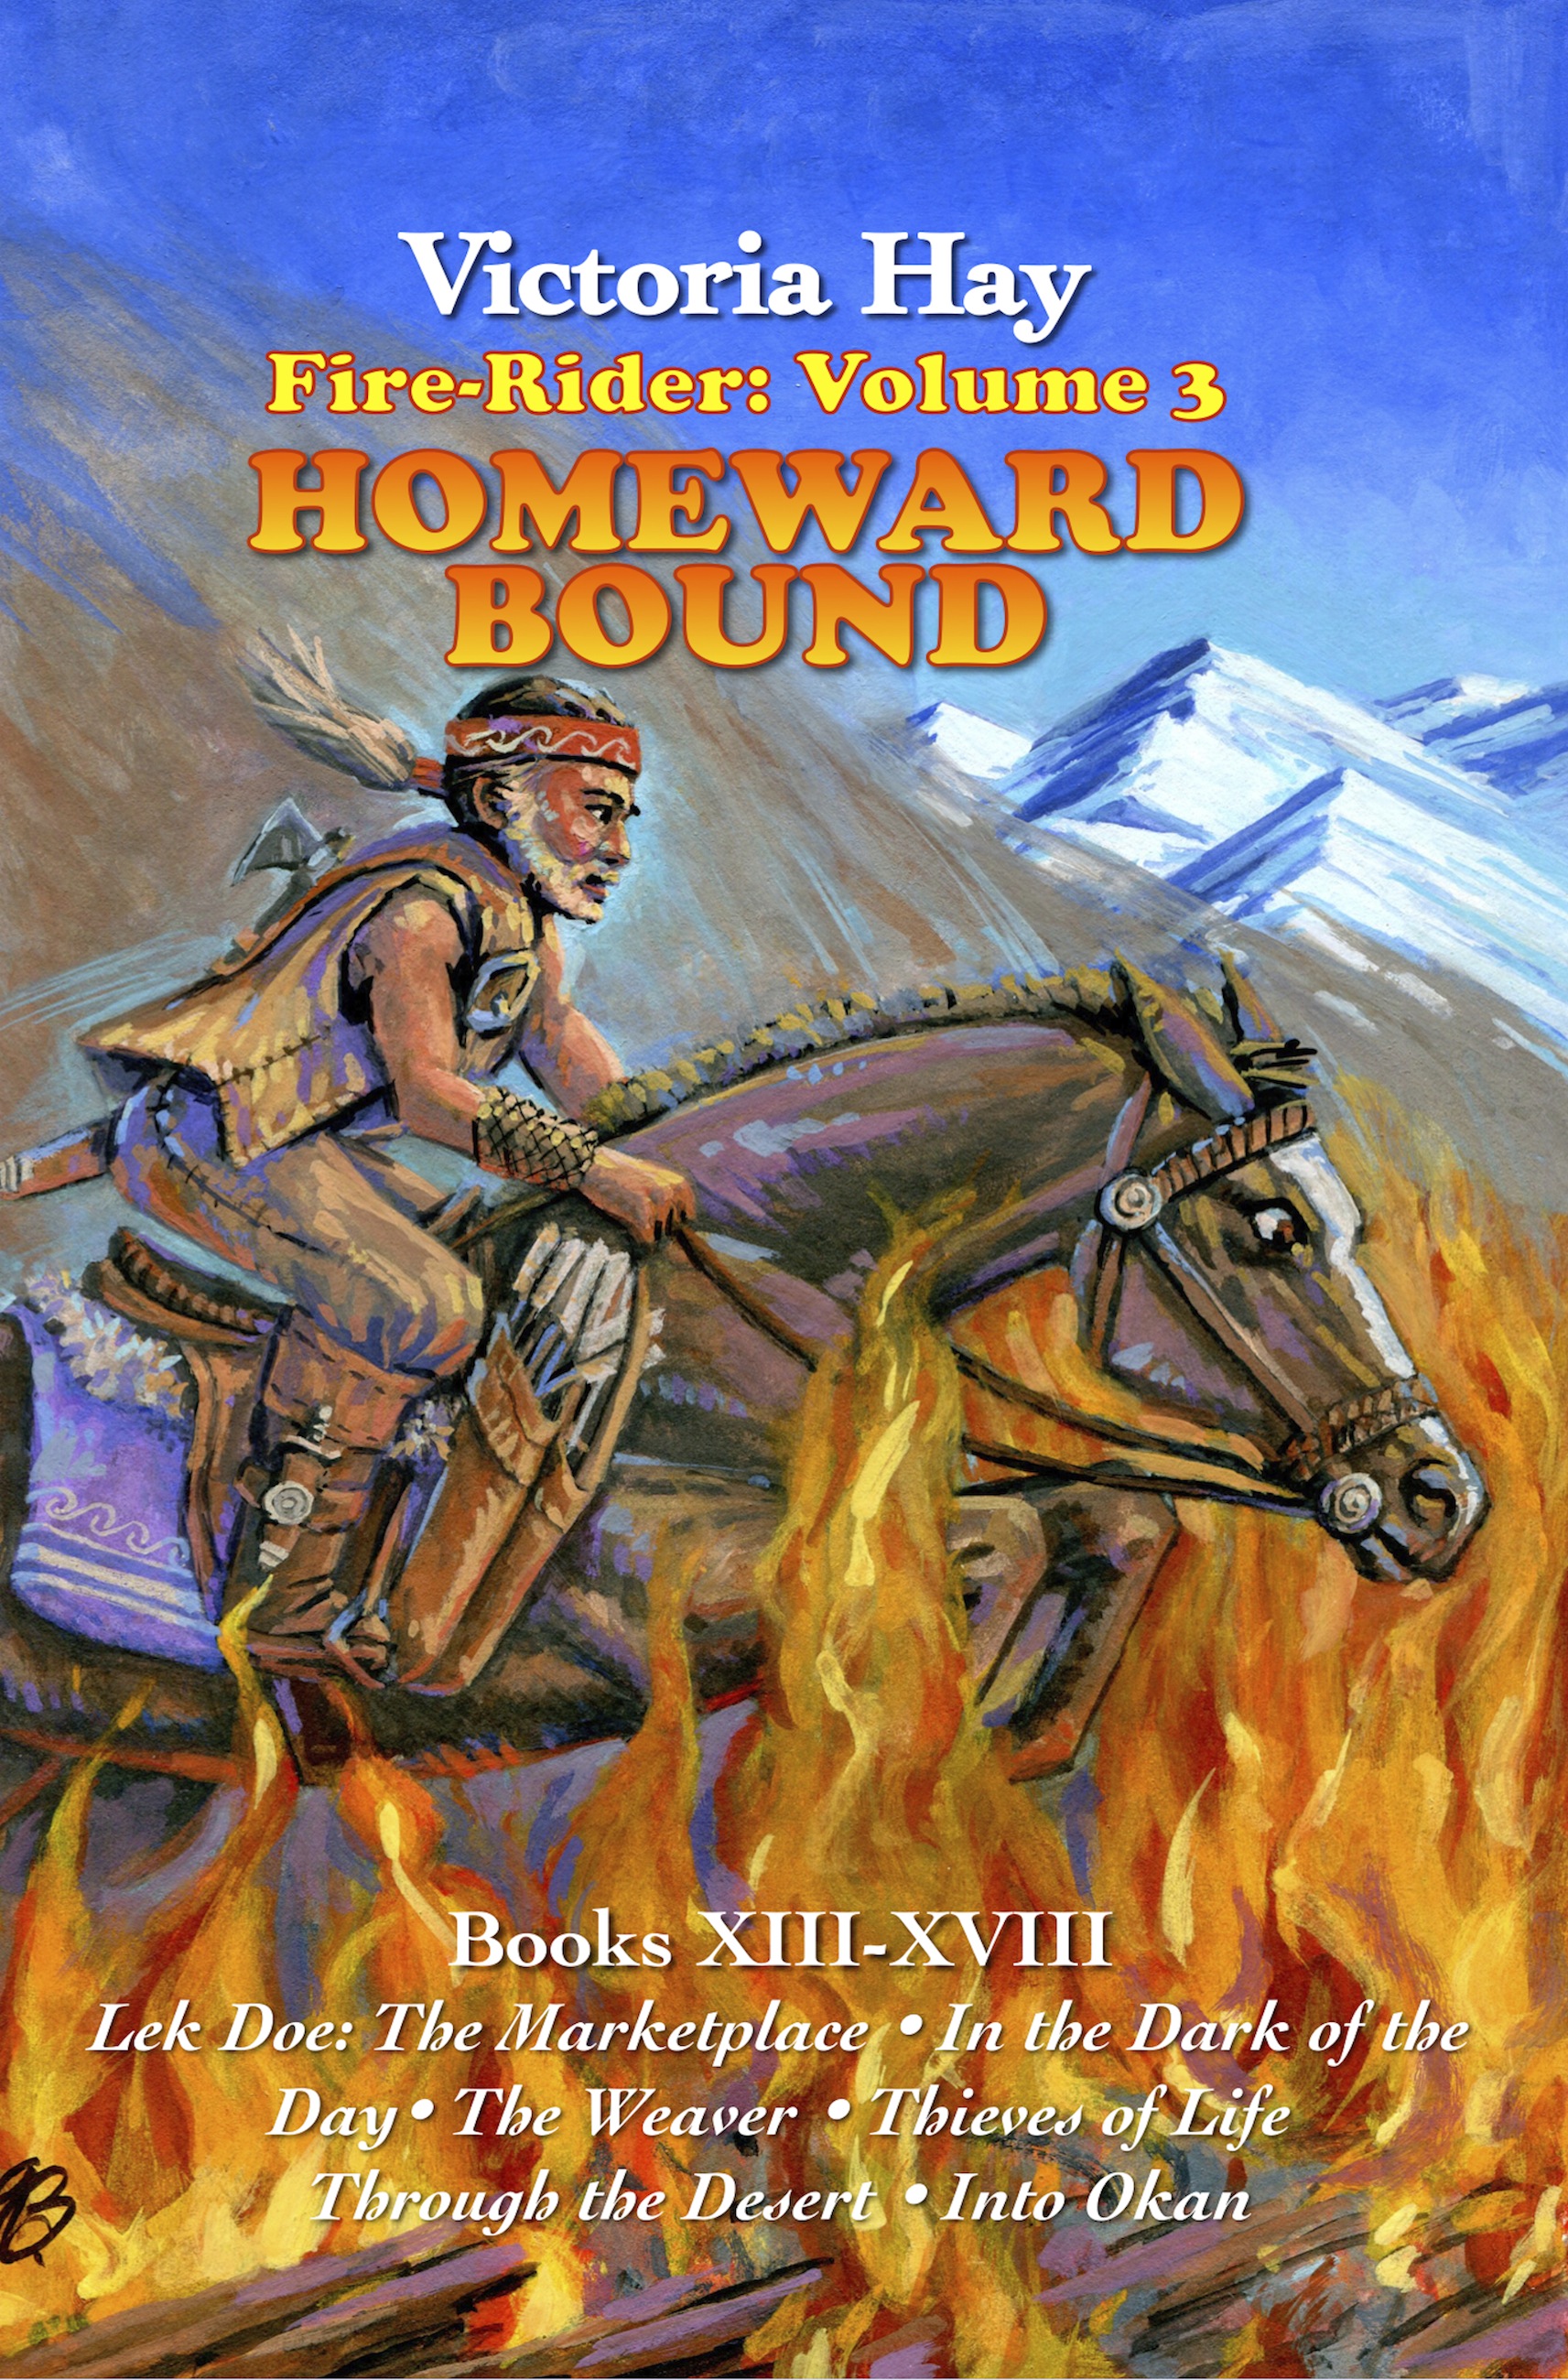 Fire-Rider: Volume 3 Homeward Bound